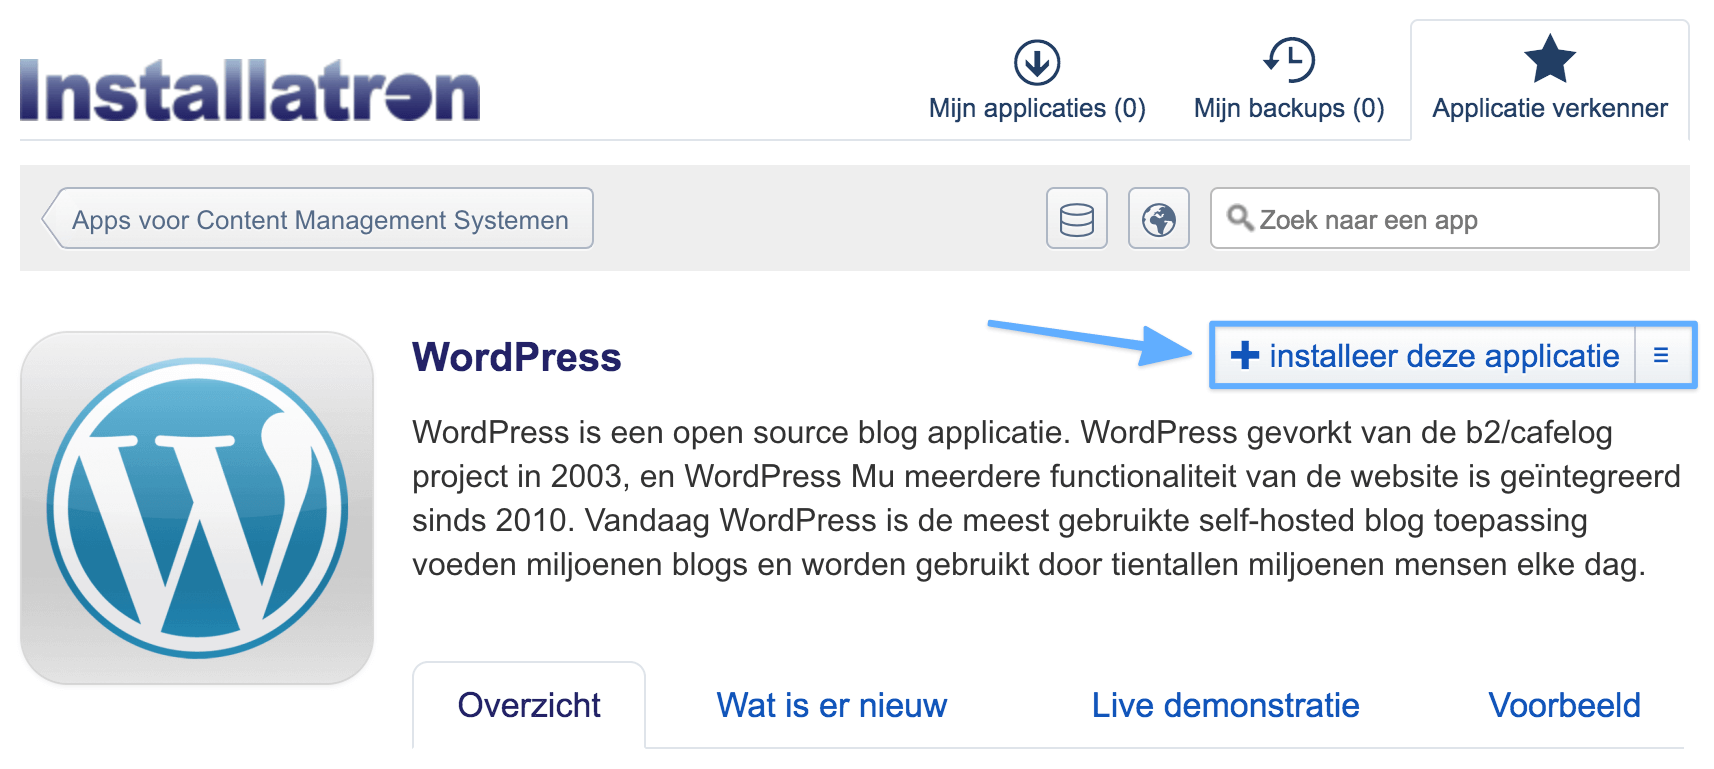 Het installeren van WordPress via Installatron.